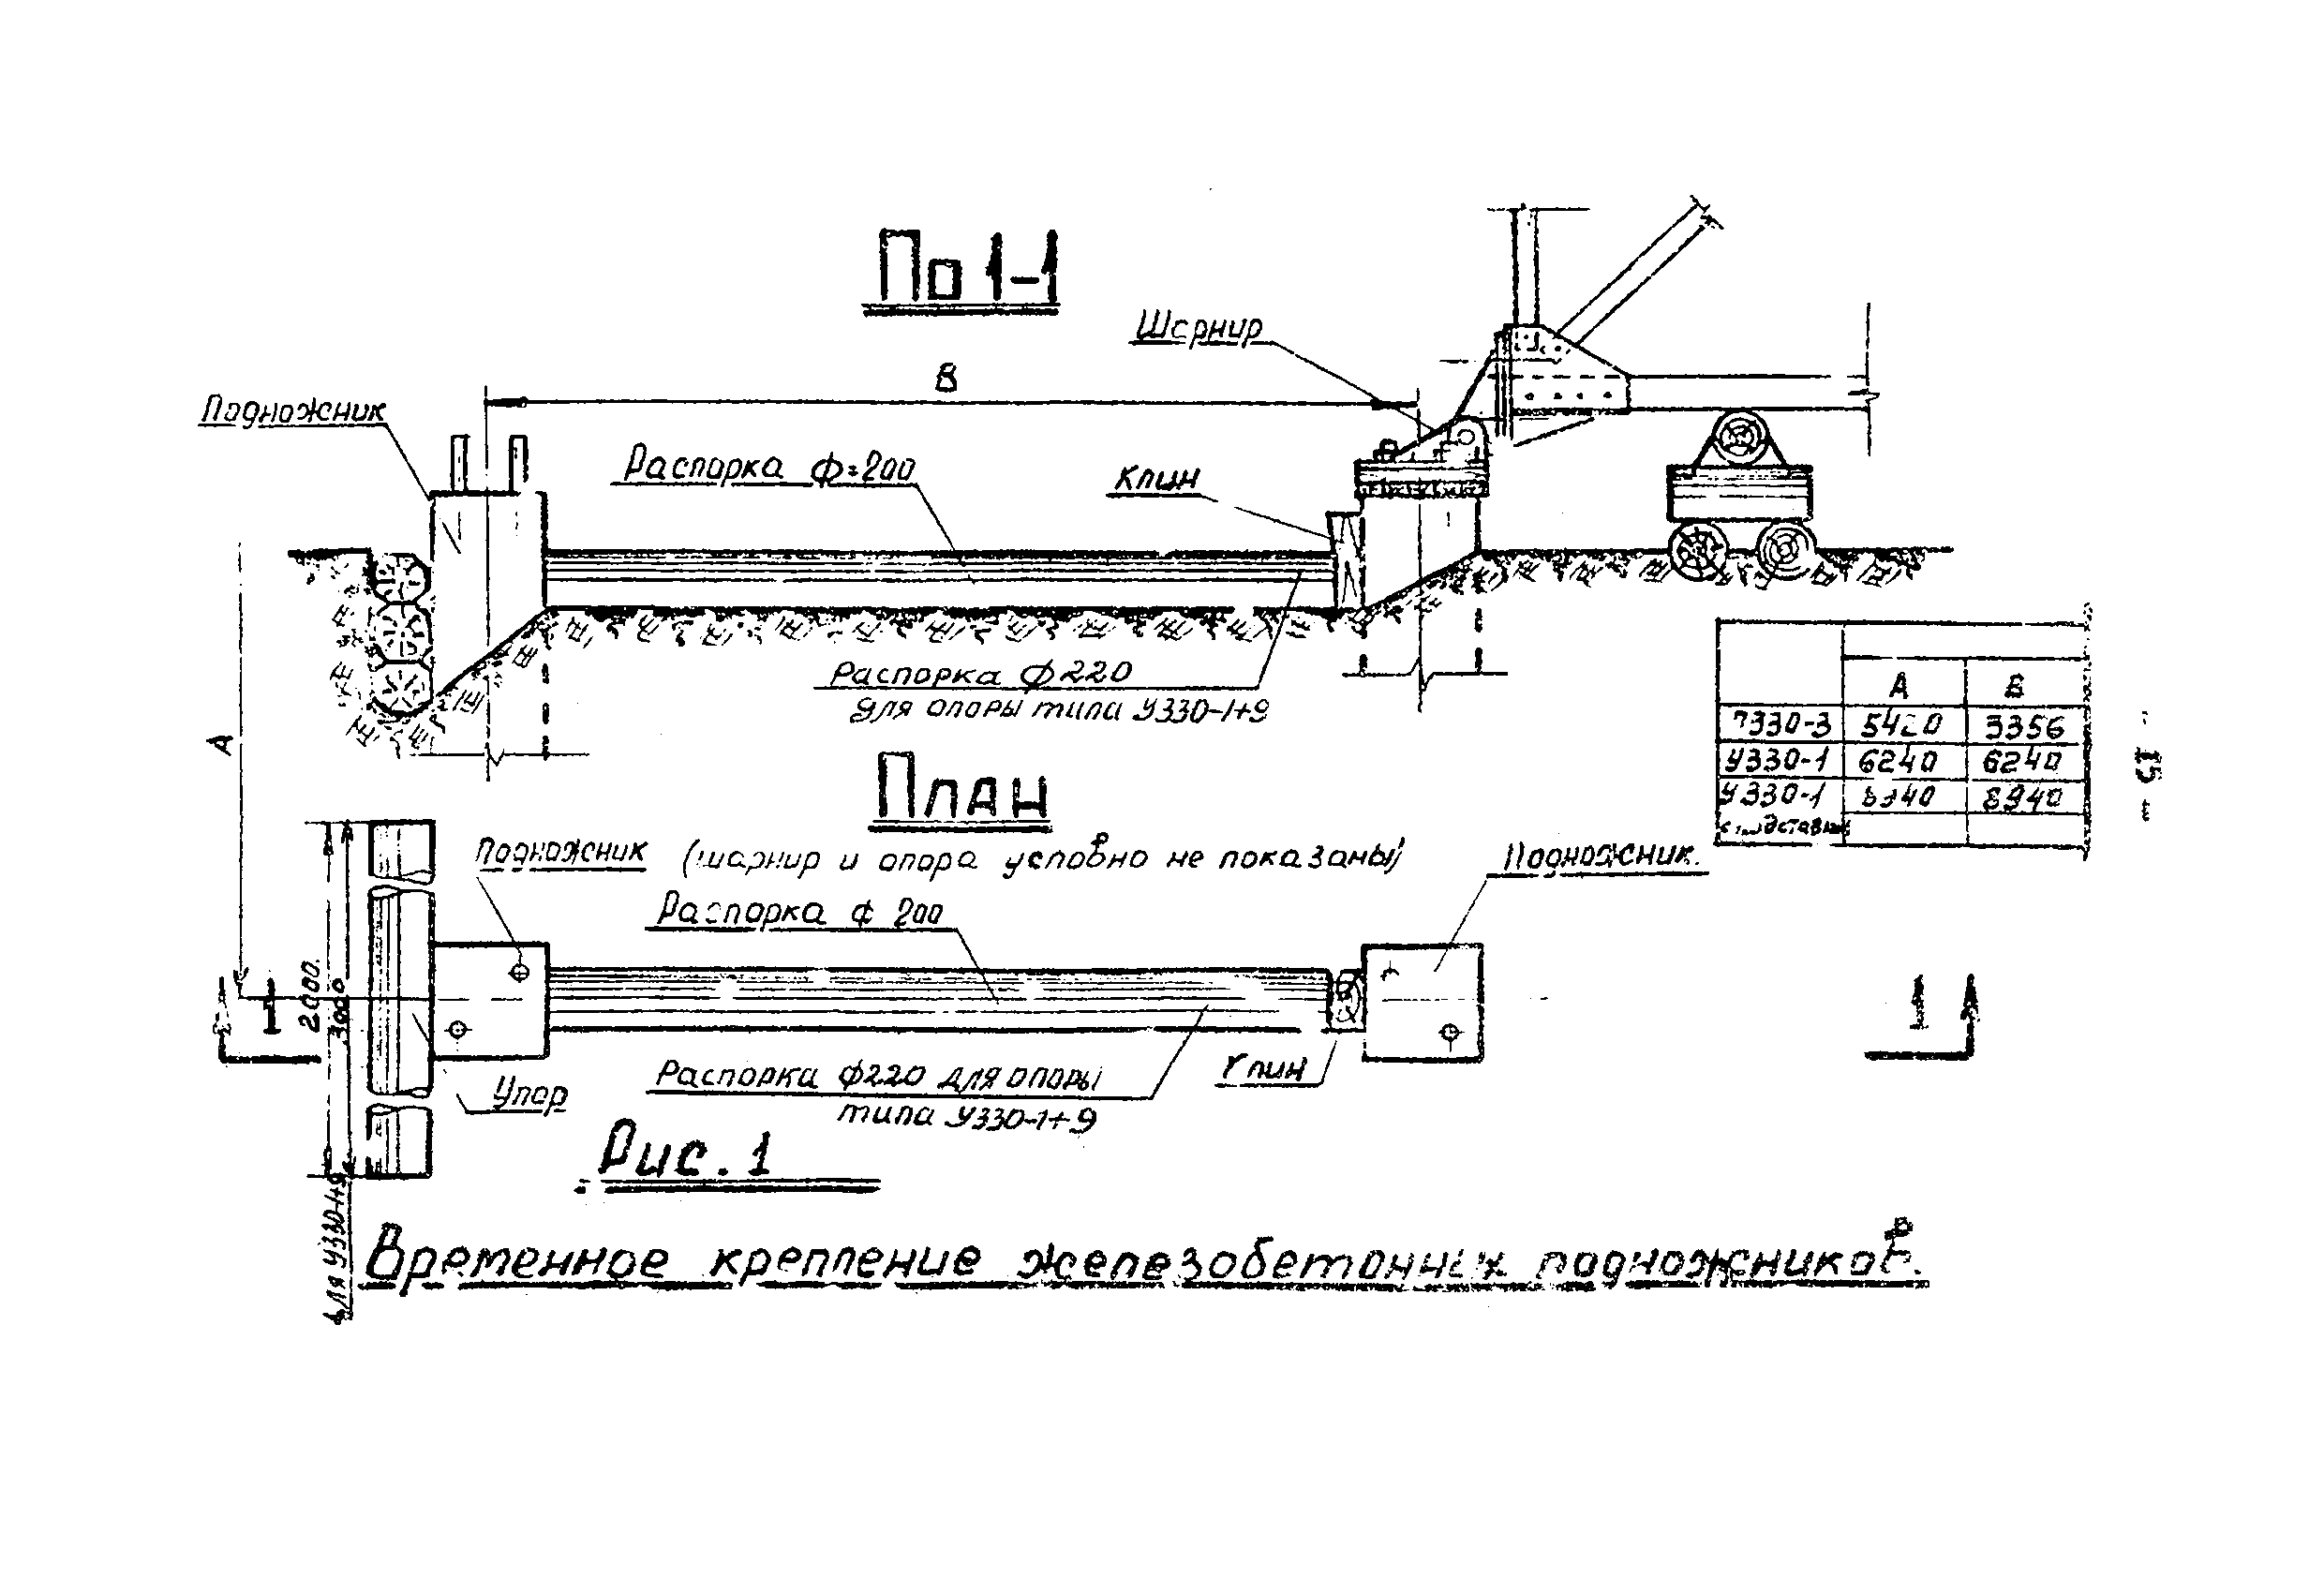 ТТК К-III-27-1